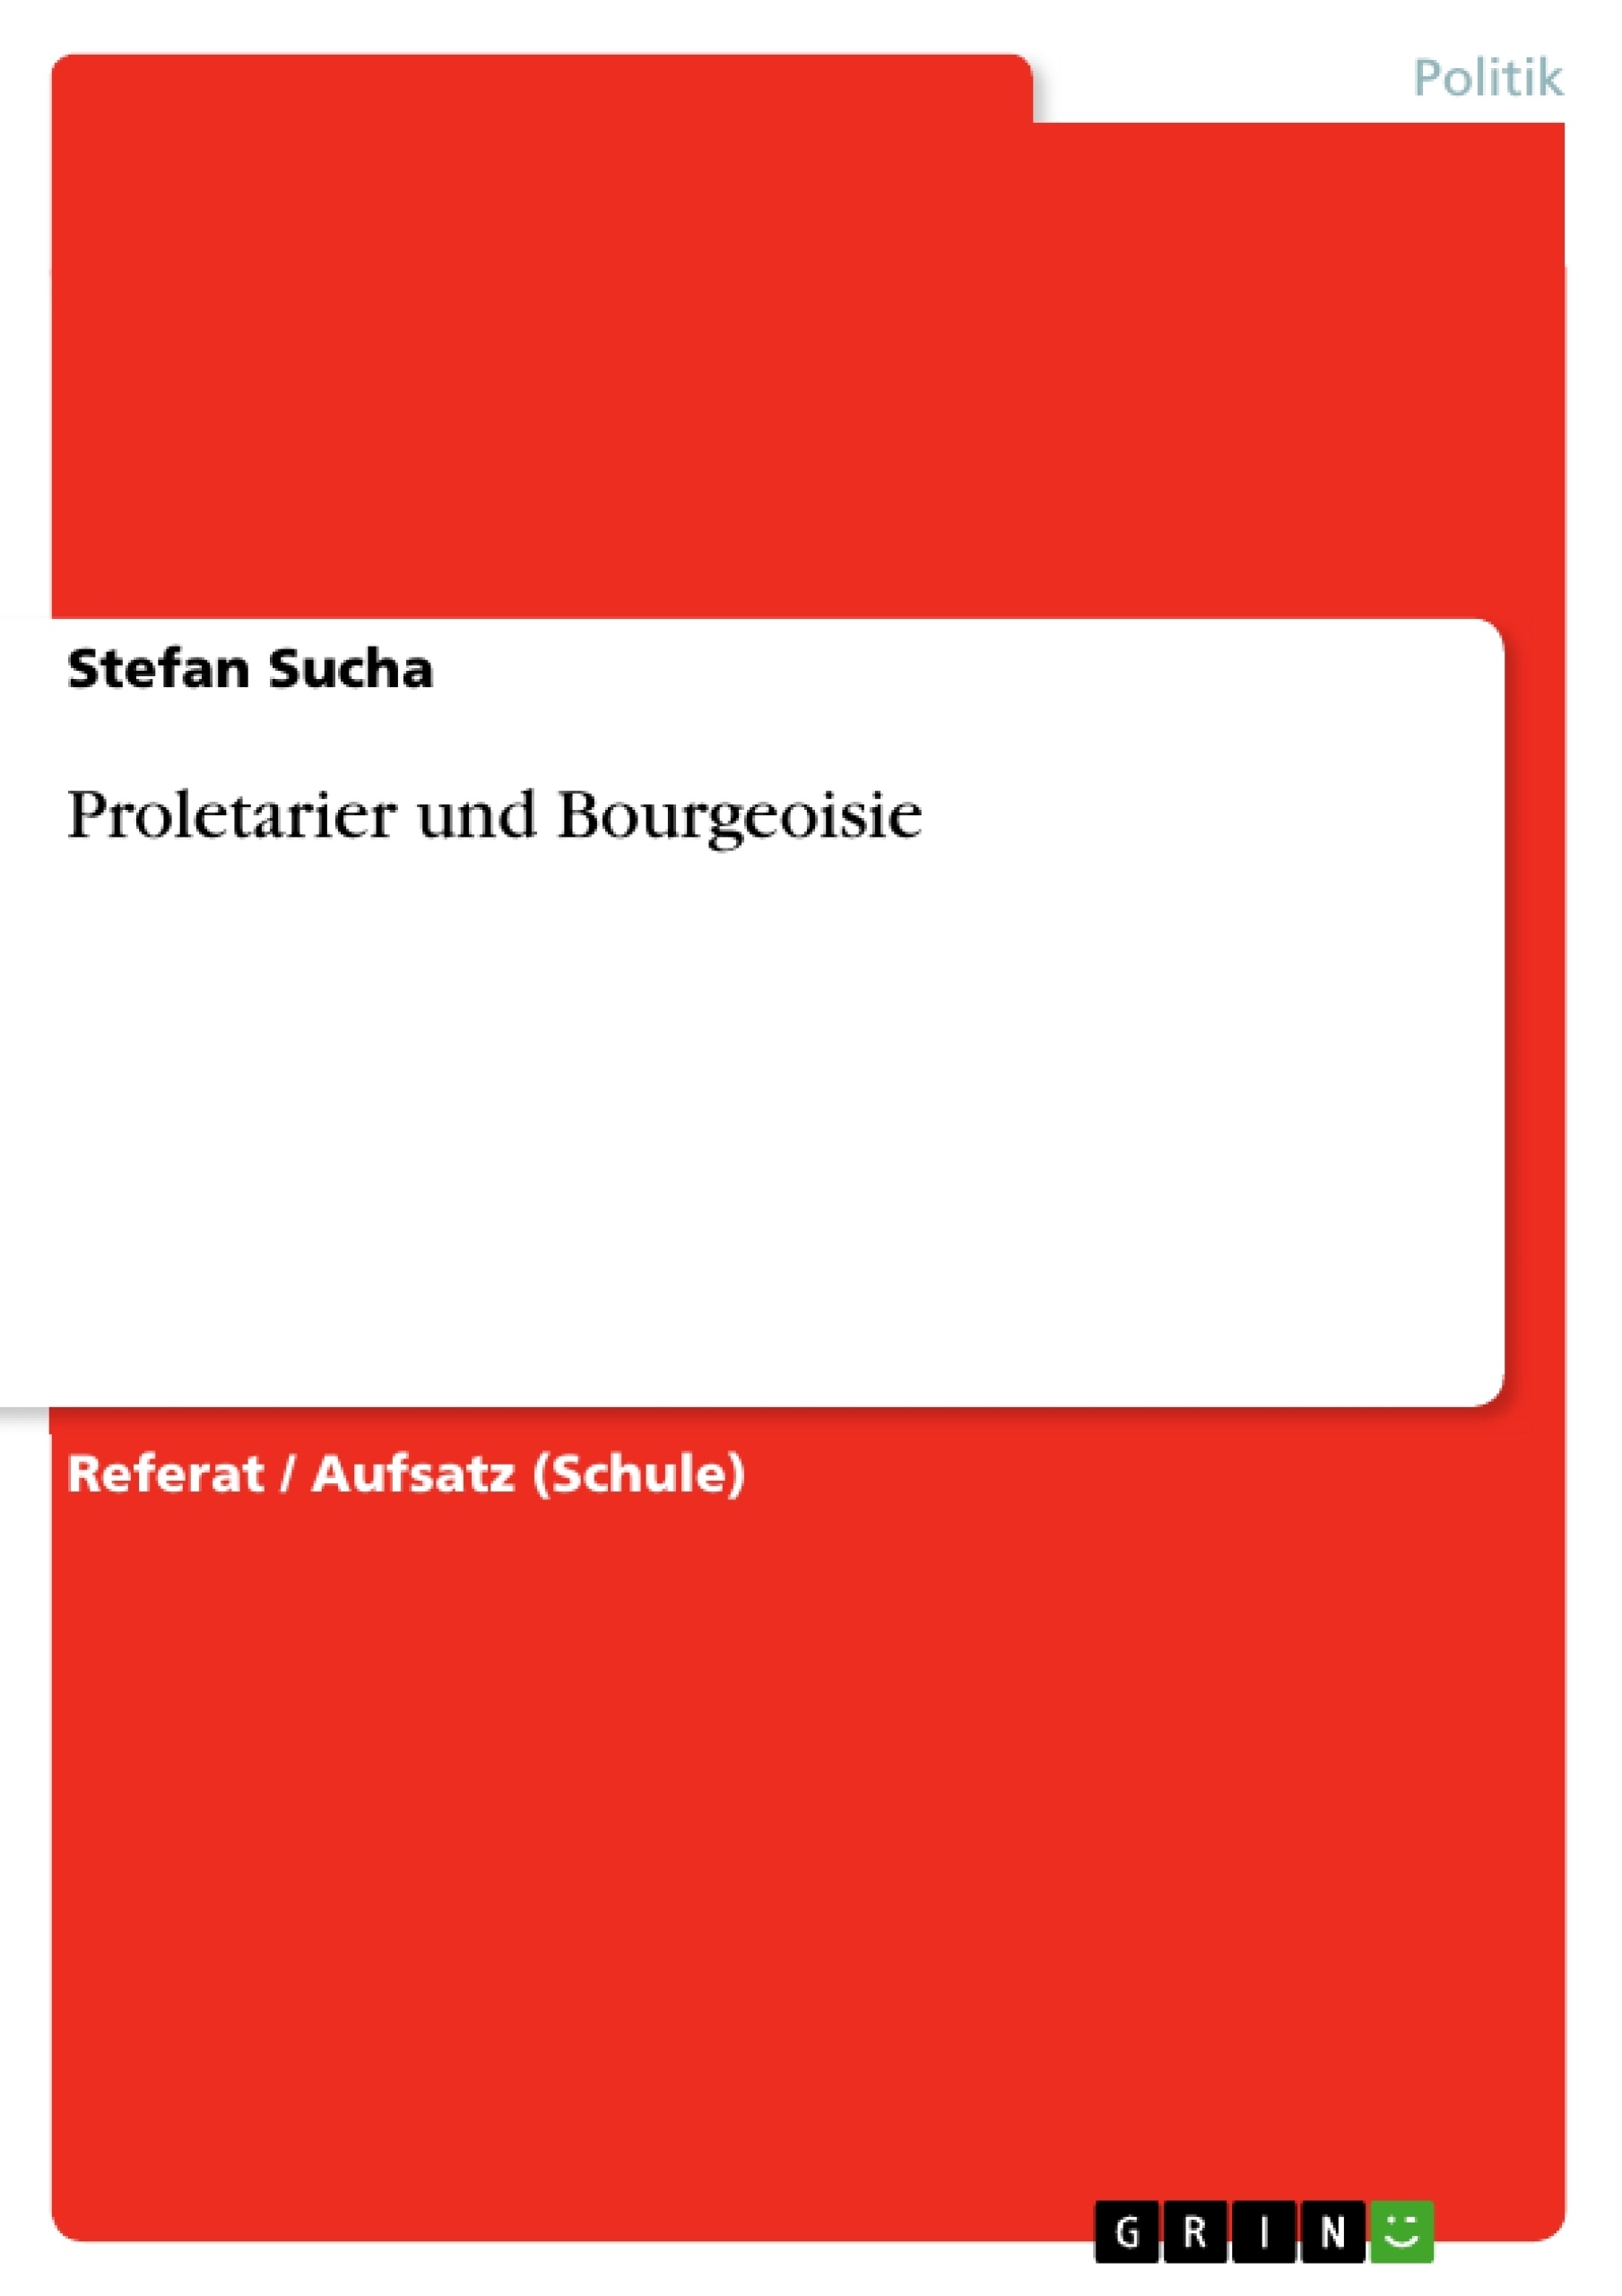 Title: Proletarier und Bourgeoisie